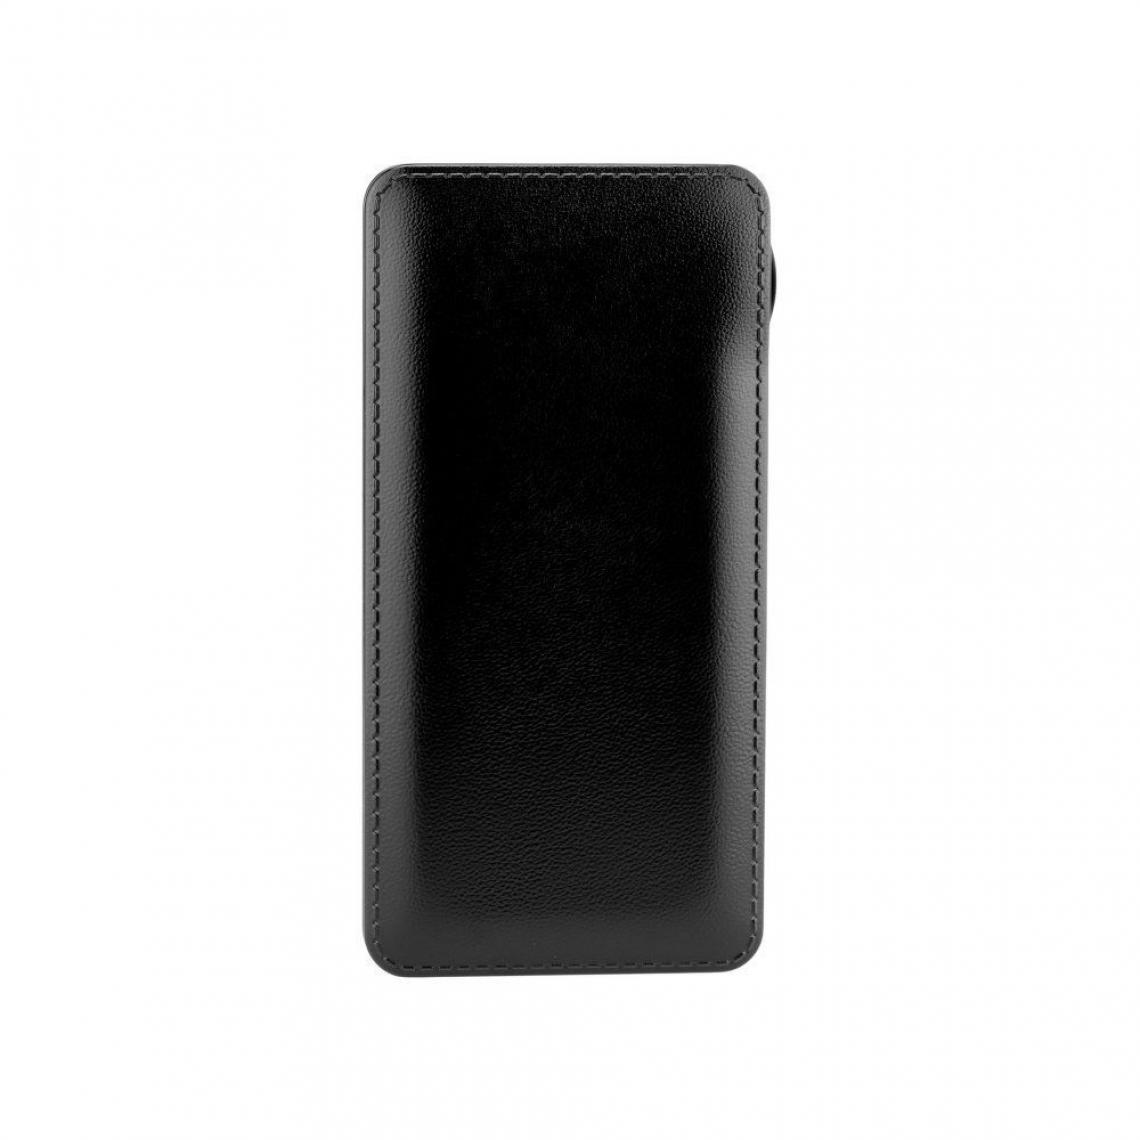 Ozzzo - Chargeur batterie externe 20000 mAh powerbank ozzzo noir pour SAMSUNG i9250 Galaxy Nexus Prime - Autres accessoires smartphone